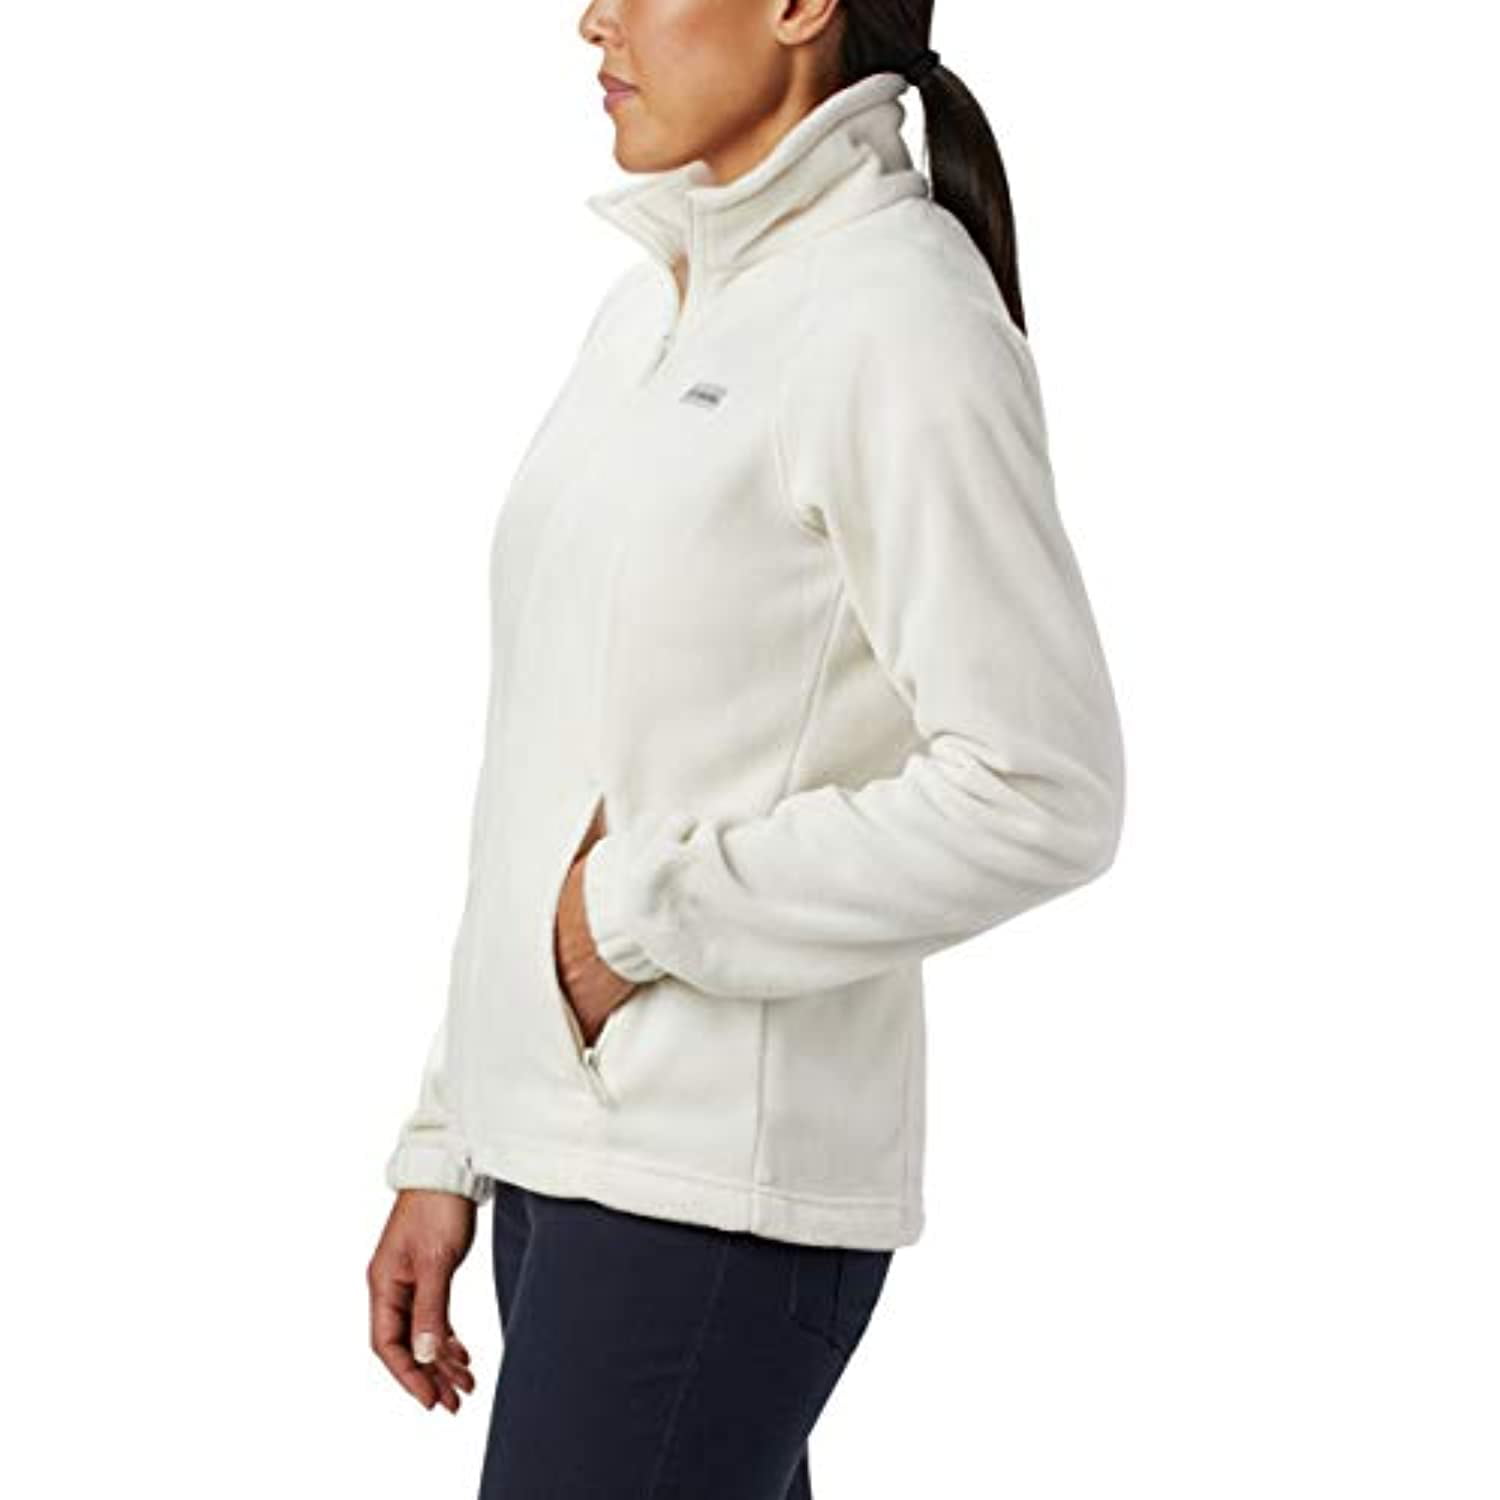 Columbia Women's Benton Springs Full Zip Fleece Jacket - Walmart.com